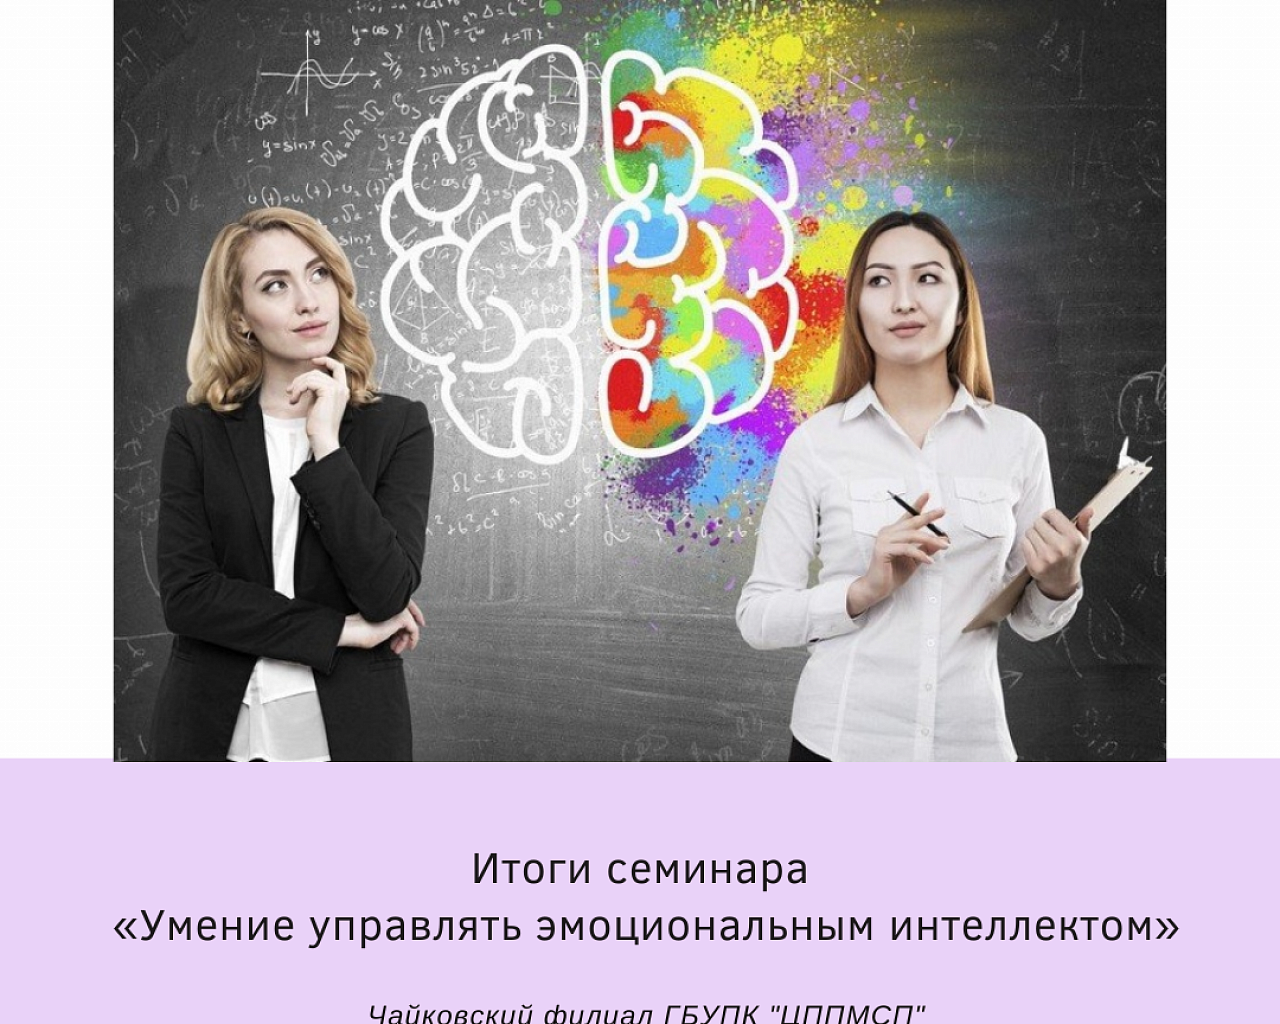 Итоги семинара  «Умение управлять эмоциональным интеллектом»